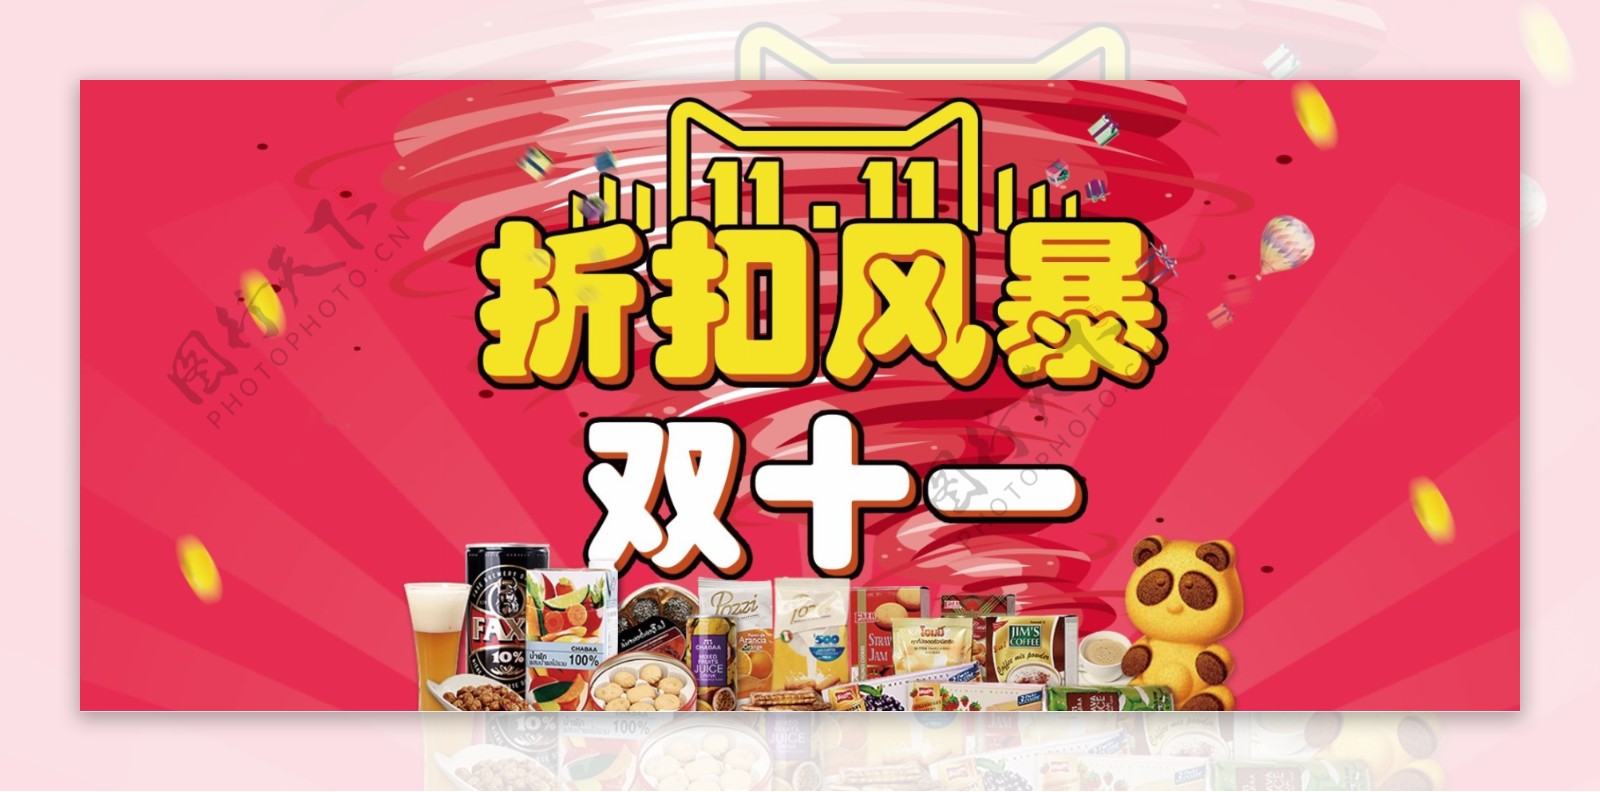 天猫淘宝双11购物狂欢节促销海报